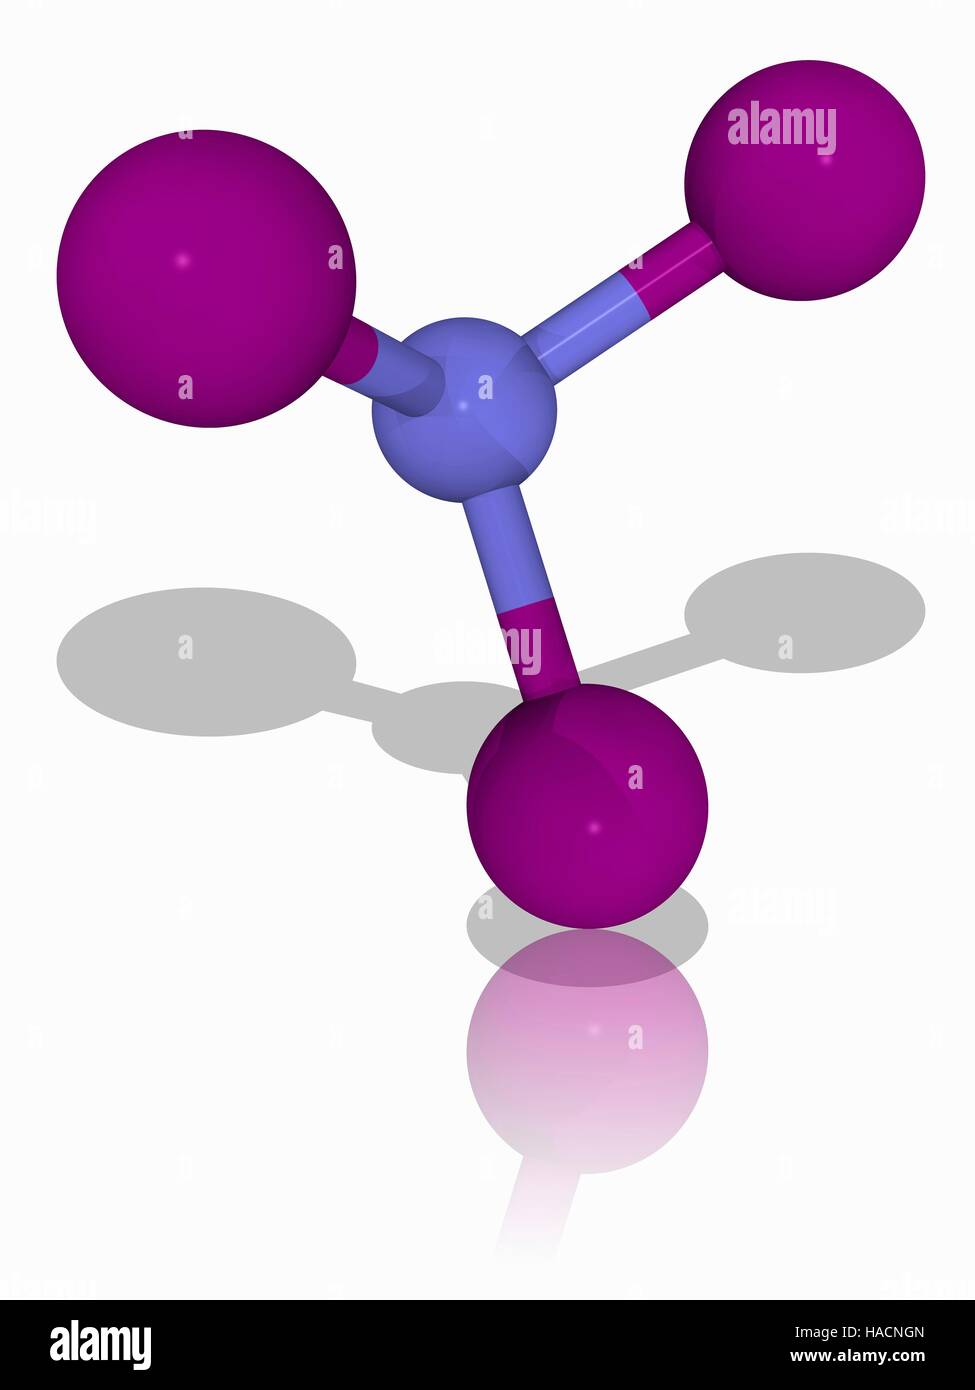 Stickstoff Triiodide. Molekulares Modell des explosiven chemischen Stickstoff Triiodide (N.I3). Dieser Sprengstoff ist extrem empfindlich gegenüber Erschütterungen. Atome als Kugeln dargestellt werden und sind farblich gekennzeichnet: Stickstoff (blau) und Jod (violett). Abbildung. Stockfoto